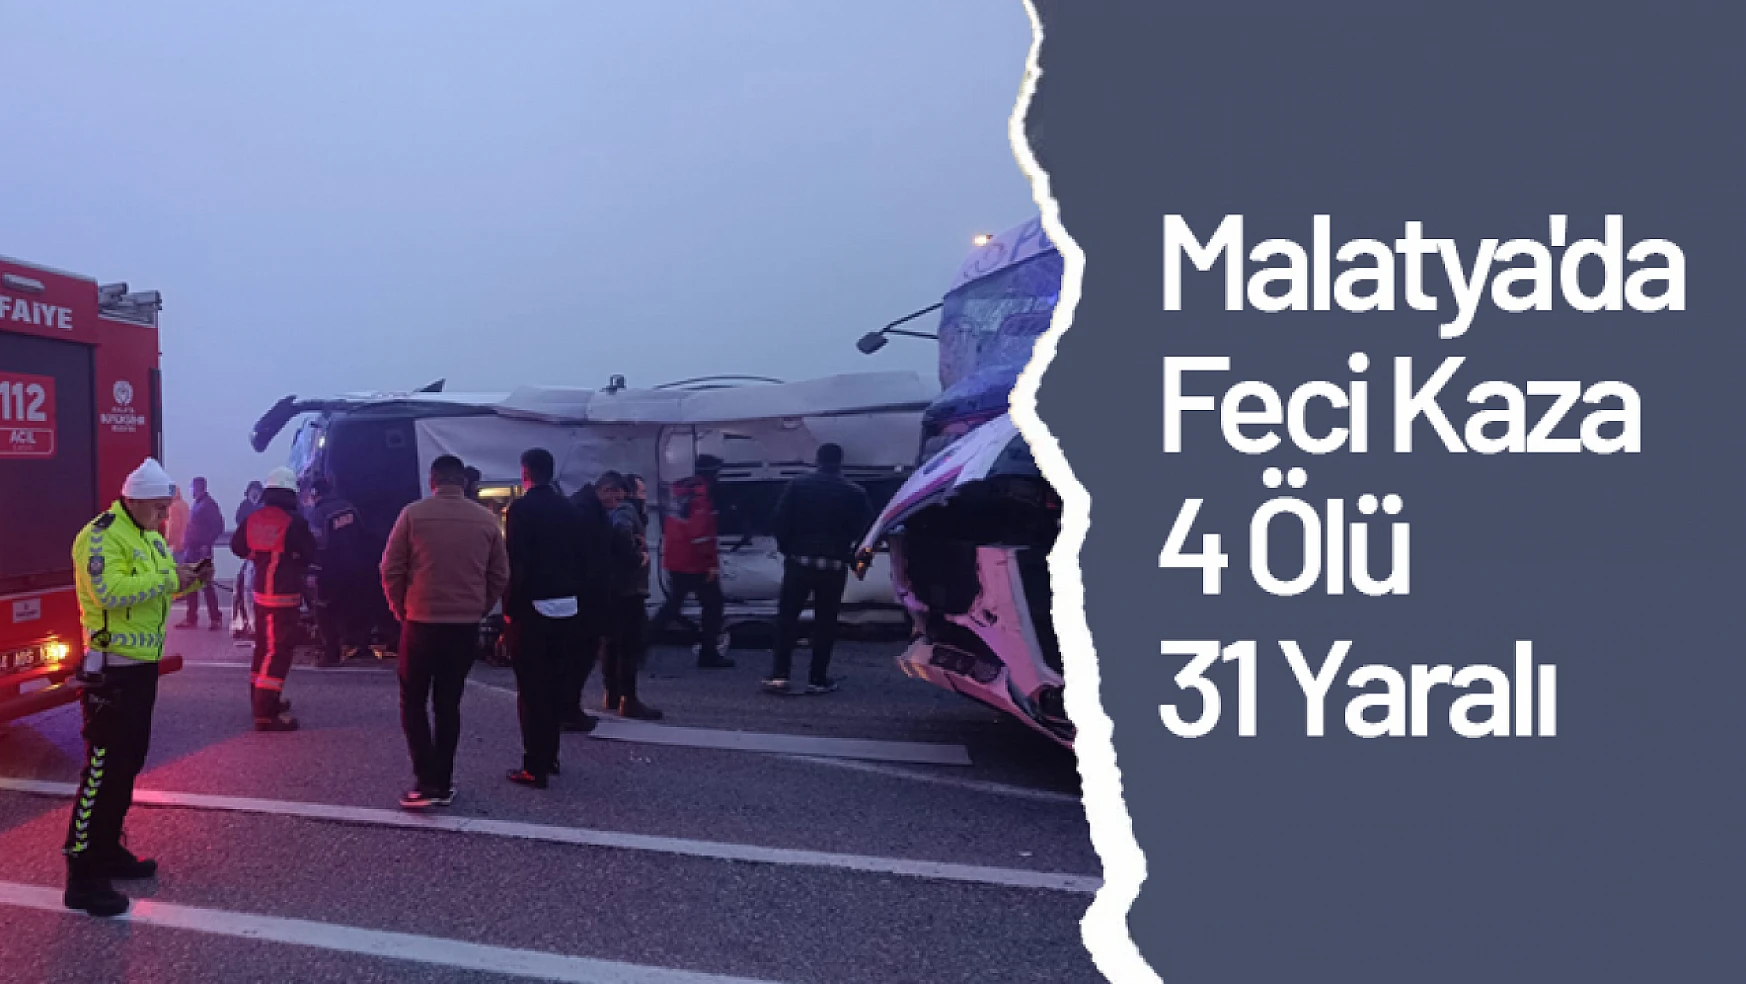 Malatya'da Feci Kaza: 4 Ölü, 31 Yaralı